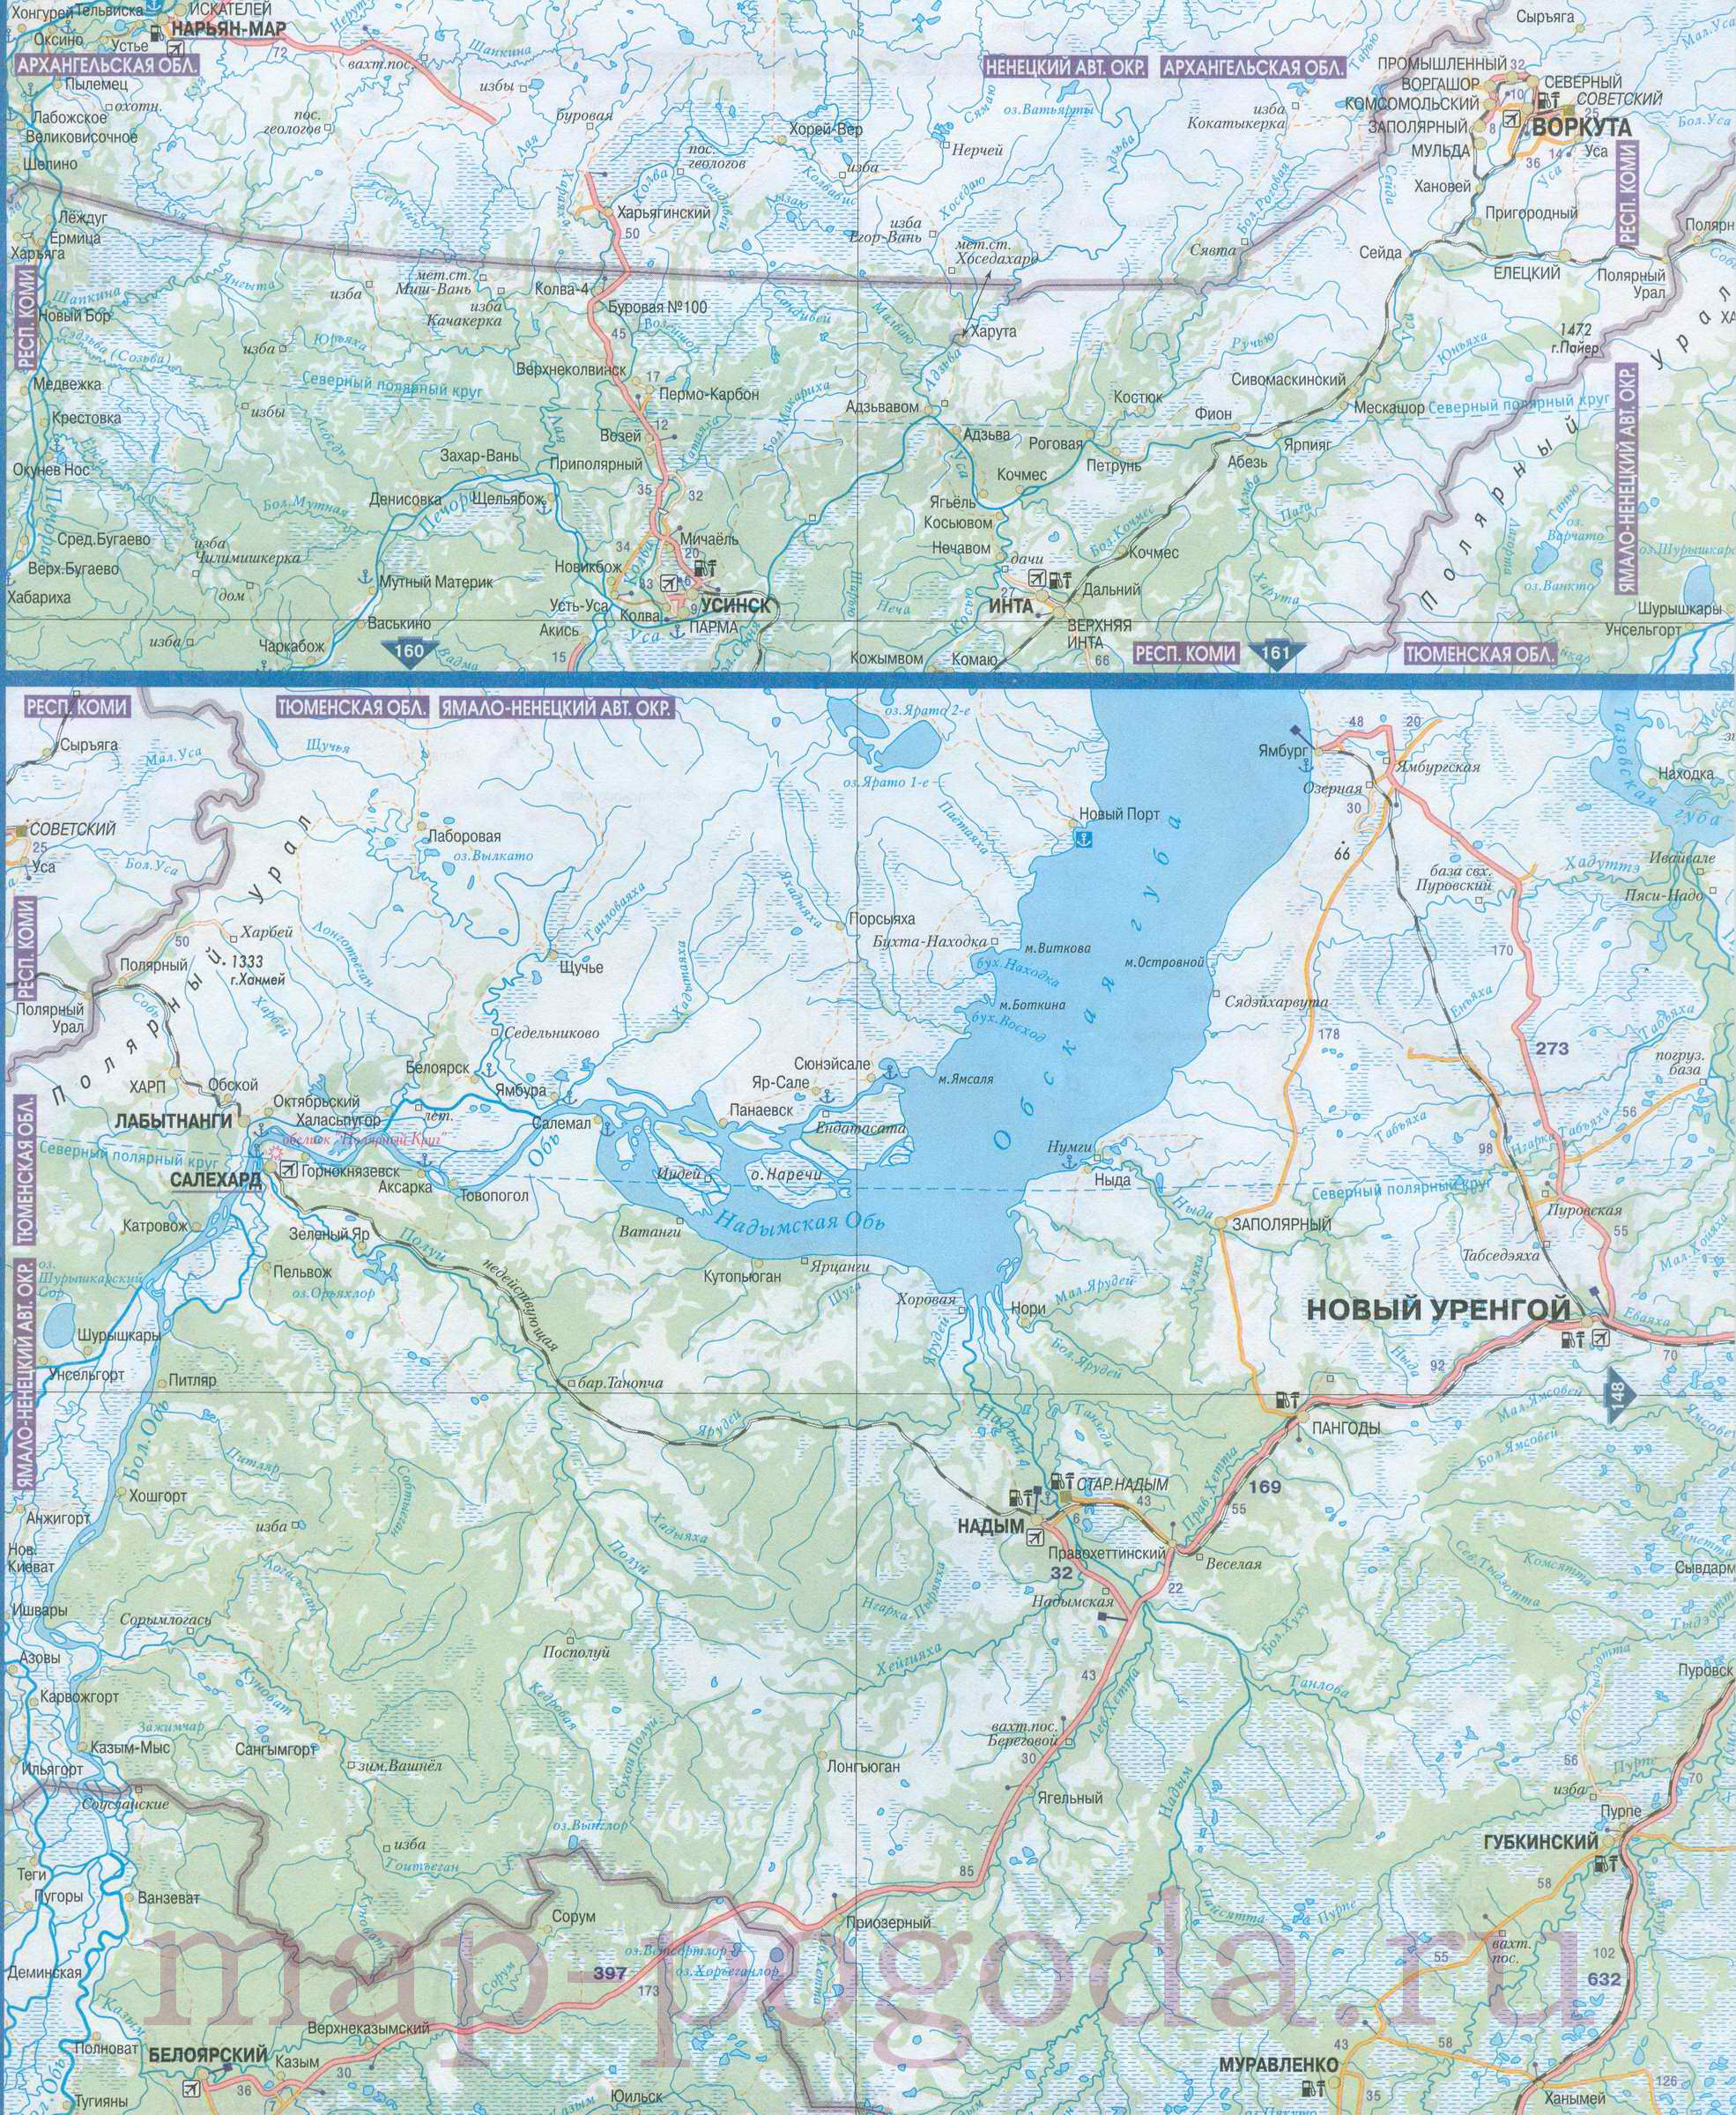 Карта запада ЯНАО Ямало-Ненецкого автономного округа. Подробная картазападной части ЯНАО - Ямало-ненецкий автономный округ,